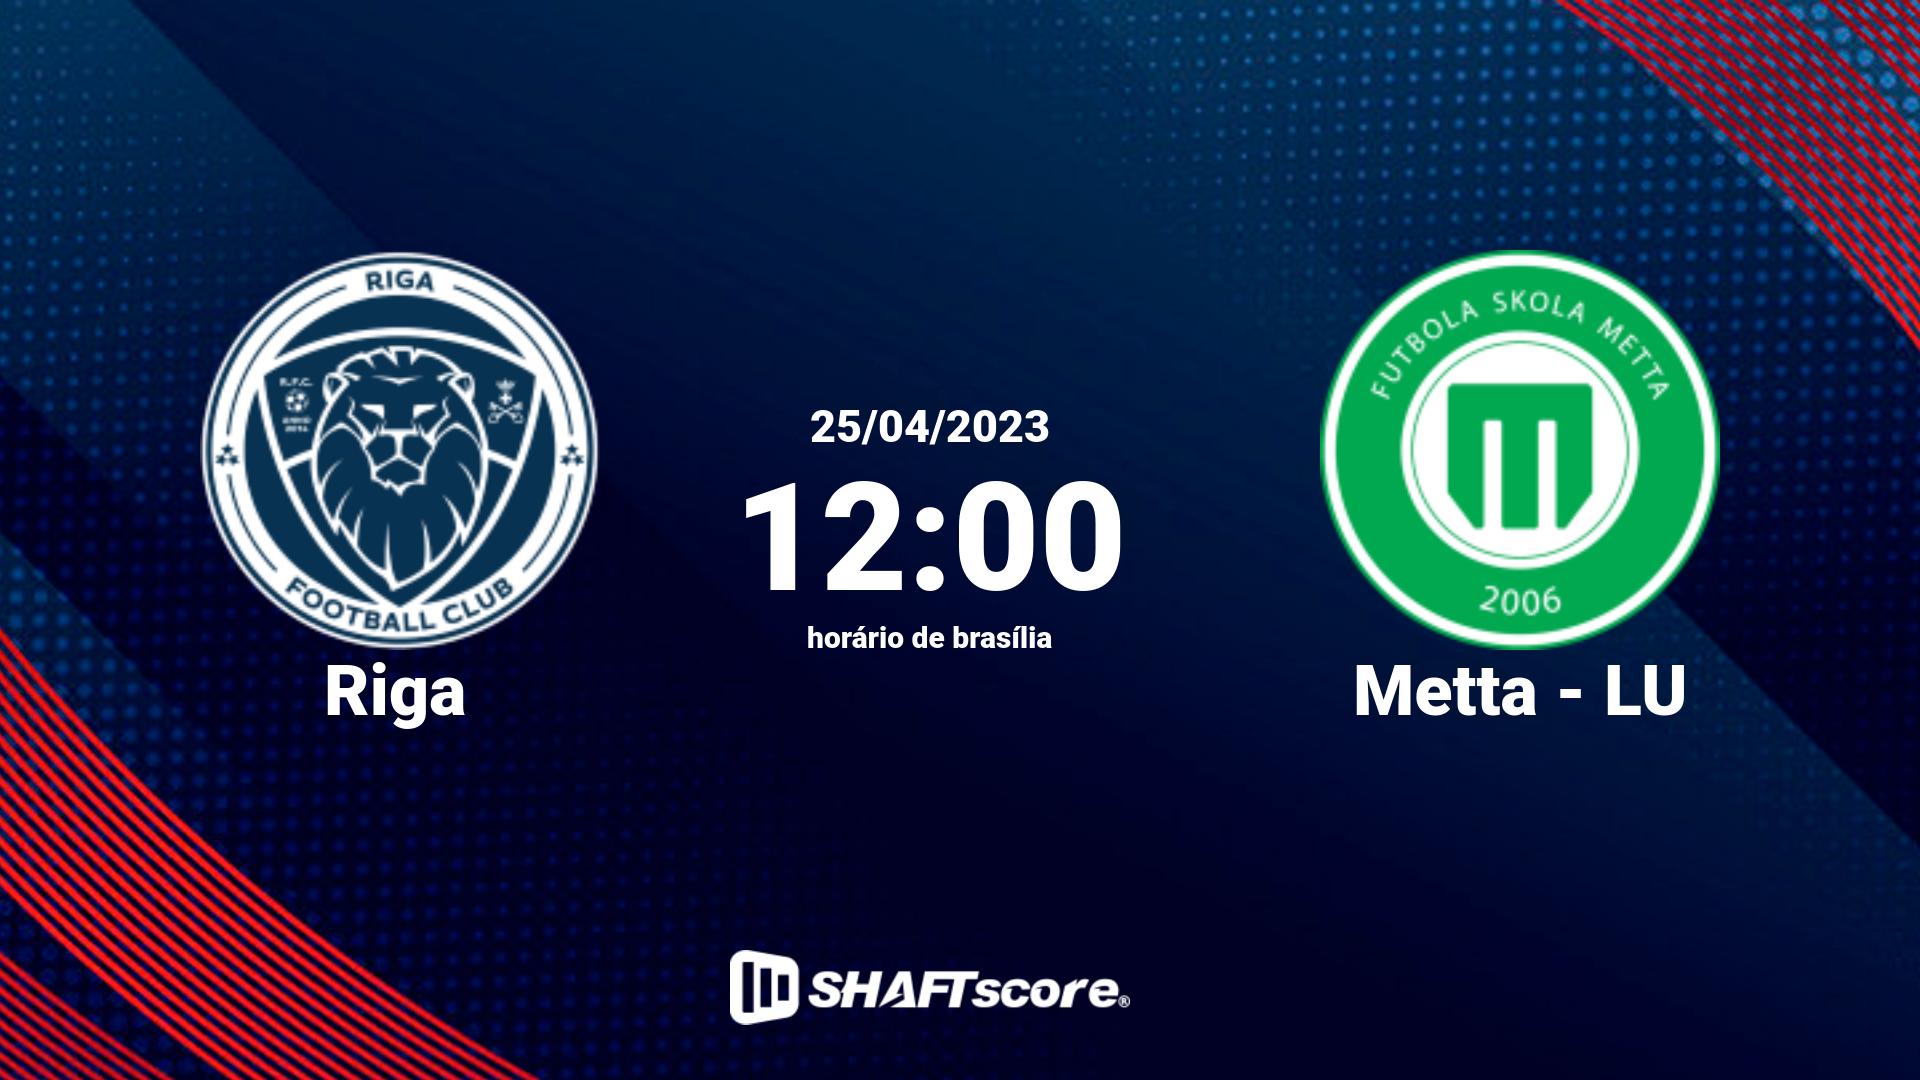 Estatísticas do jogo Riga vs Metta - LU 25.04 12:00